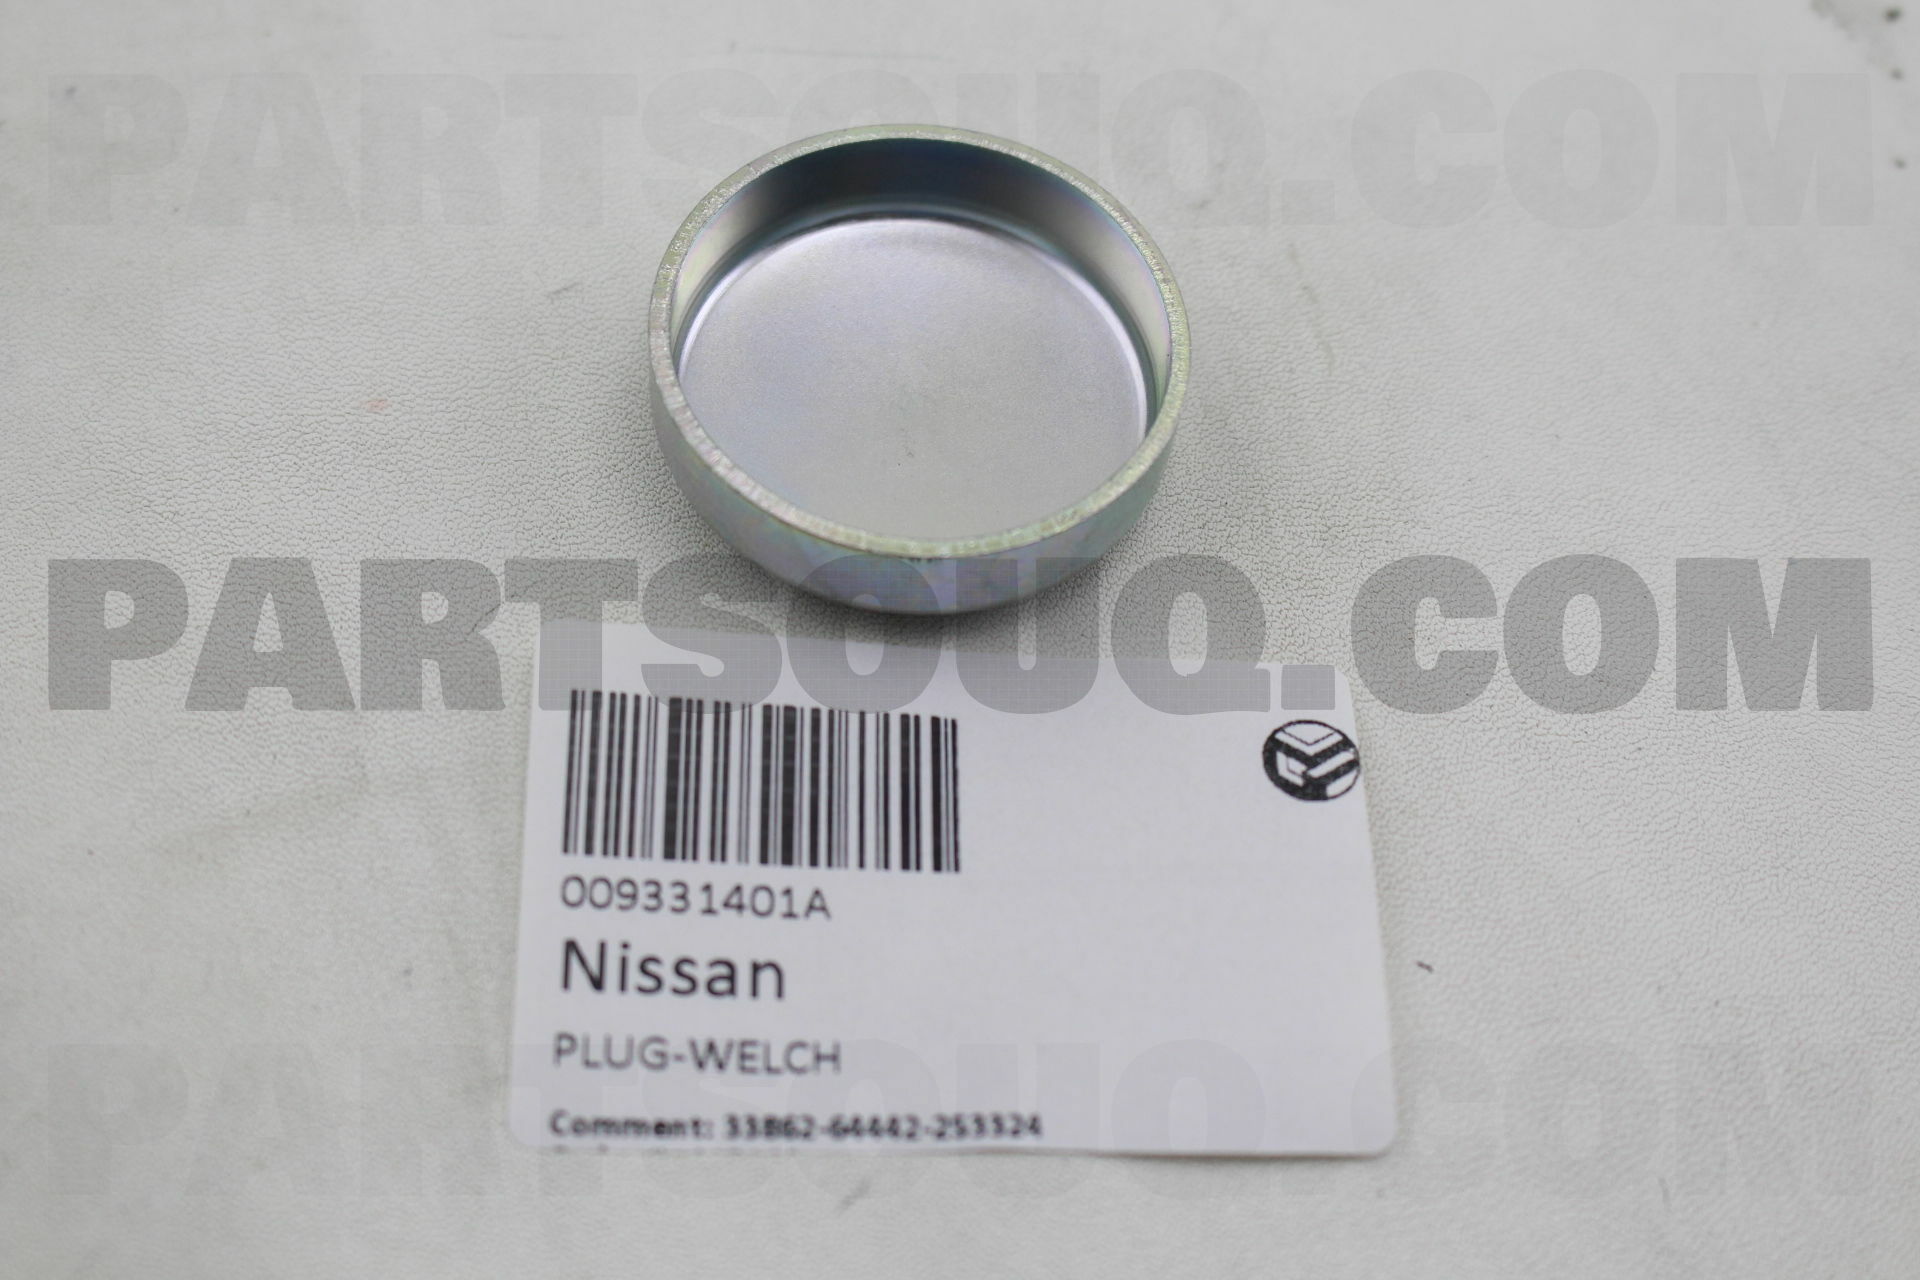 PLUG-WELCH 009331401A | Nissan Parts | PartSouq